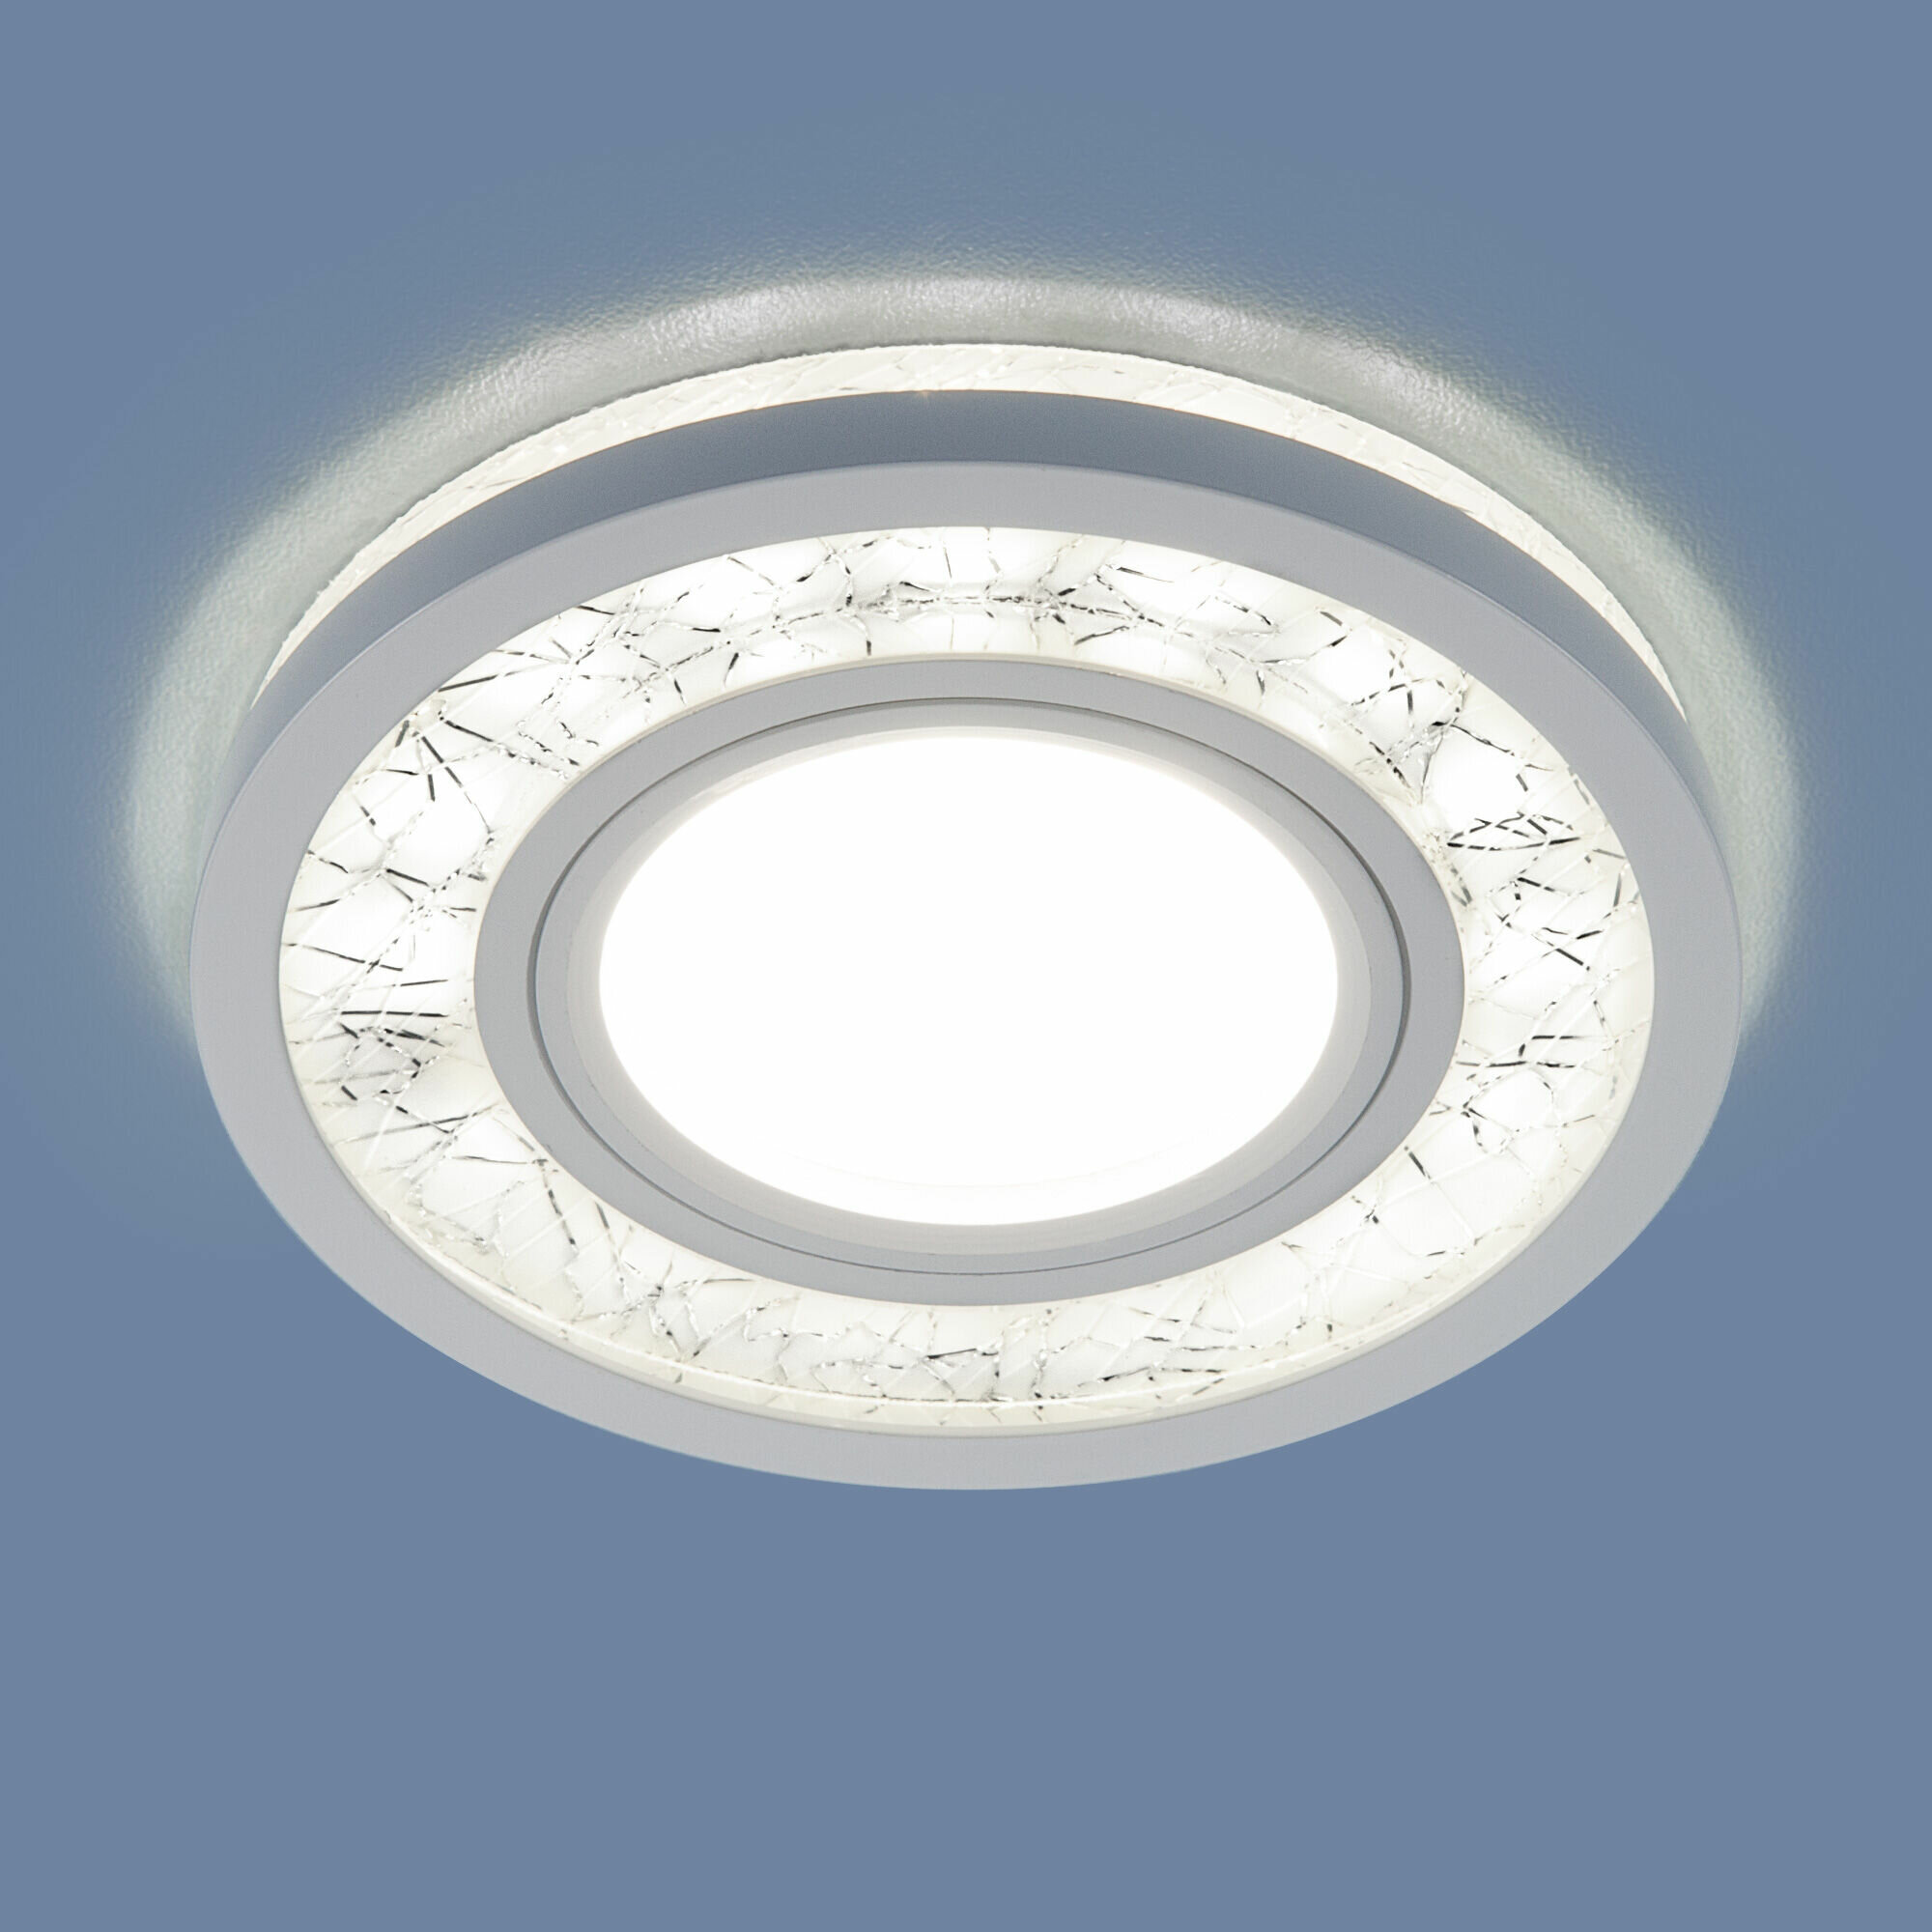 Встраиваемый светильник с LED подсветкой Elektrostandard 7020 MR16 WH/SL G5.3+3300 К цвет белый / серебро